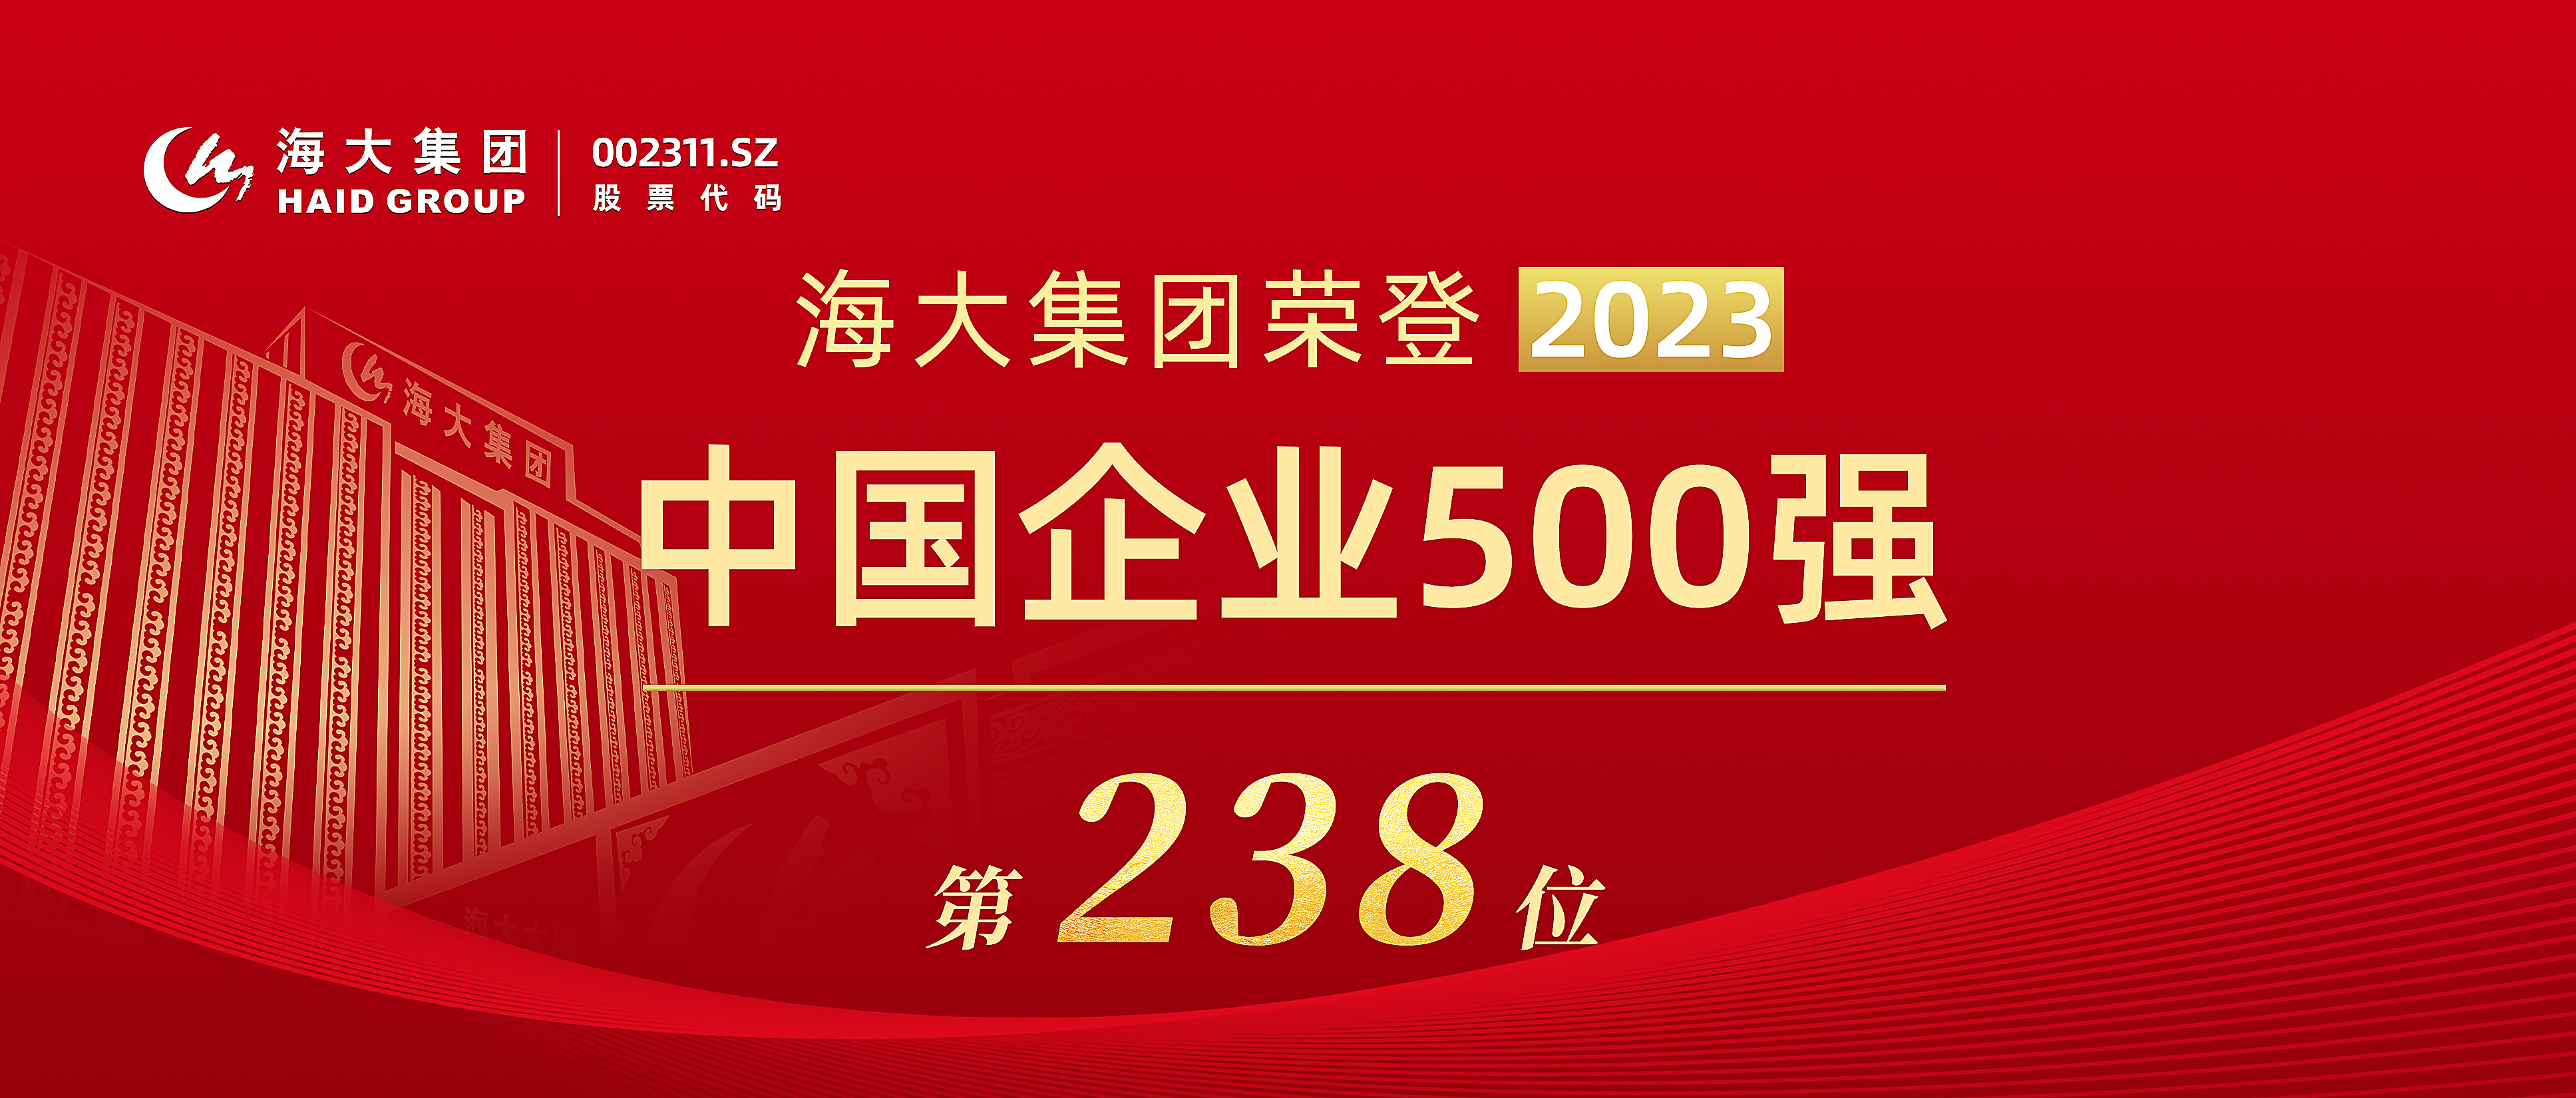 2023年中国企业500强头图(1).jpg